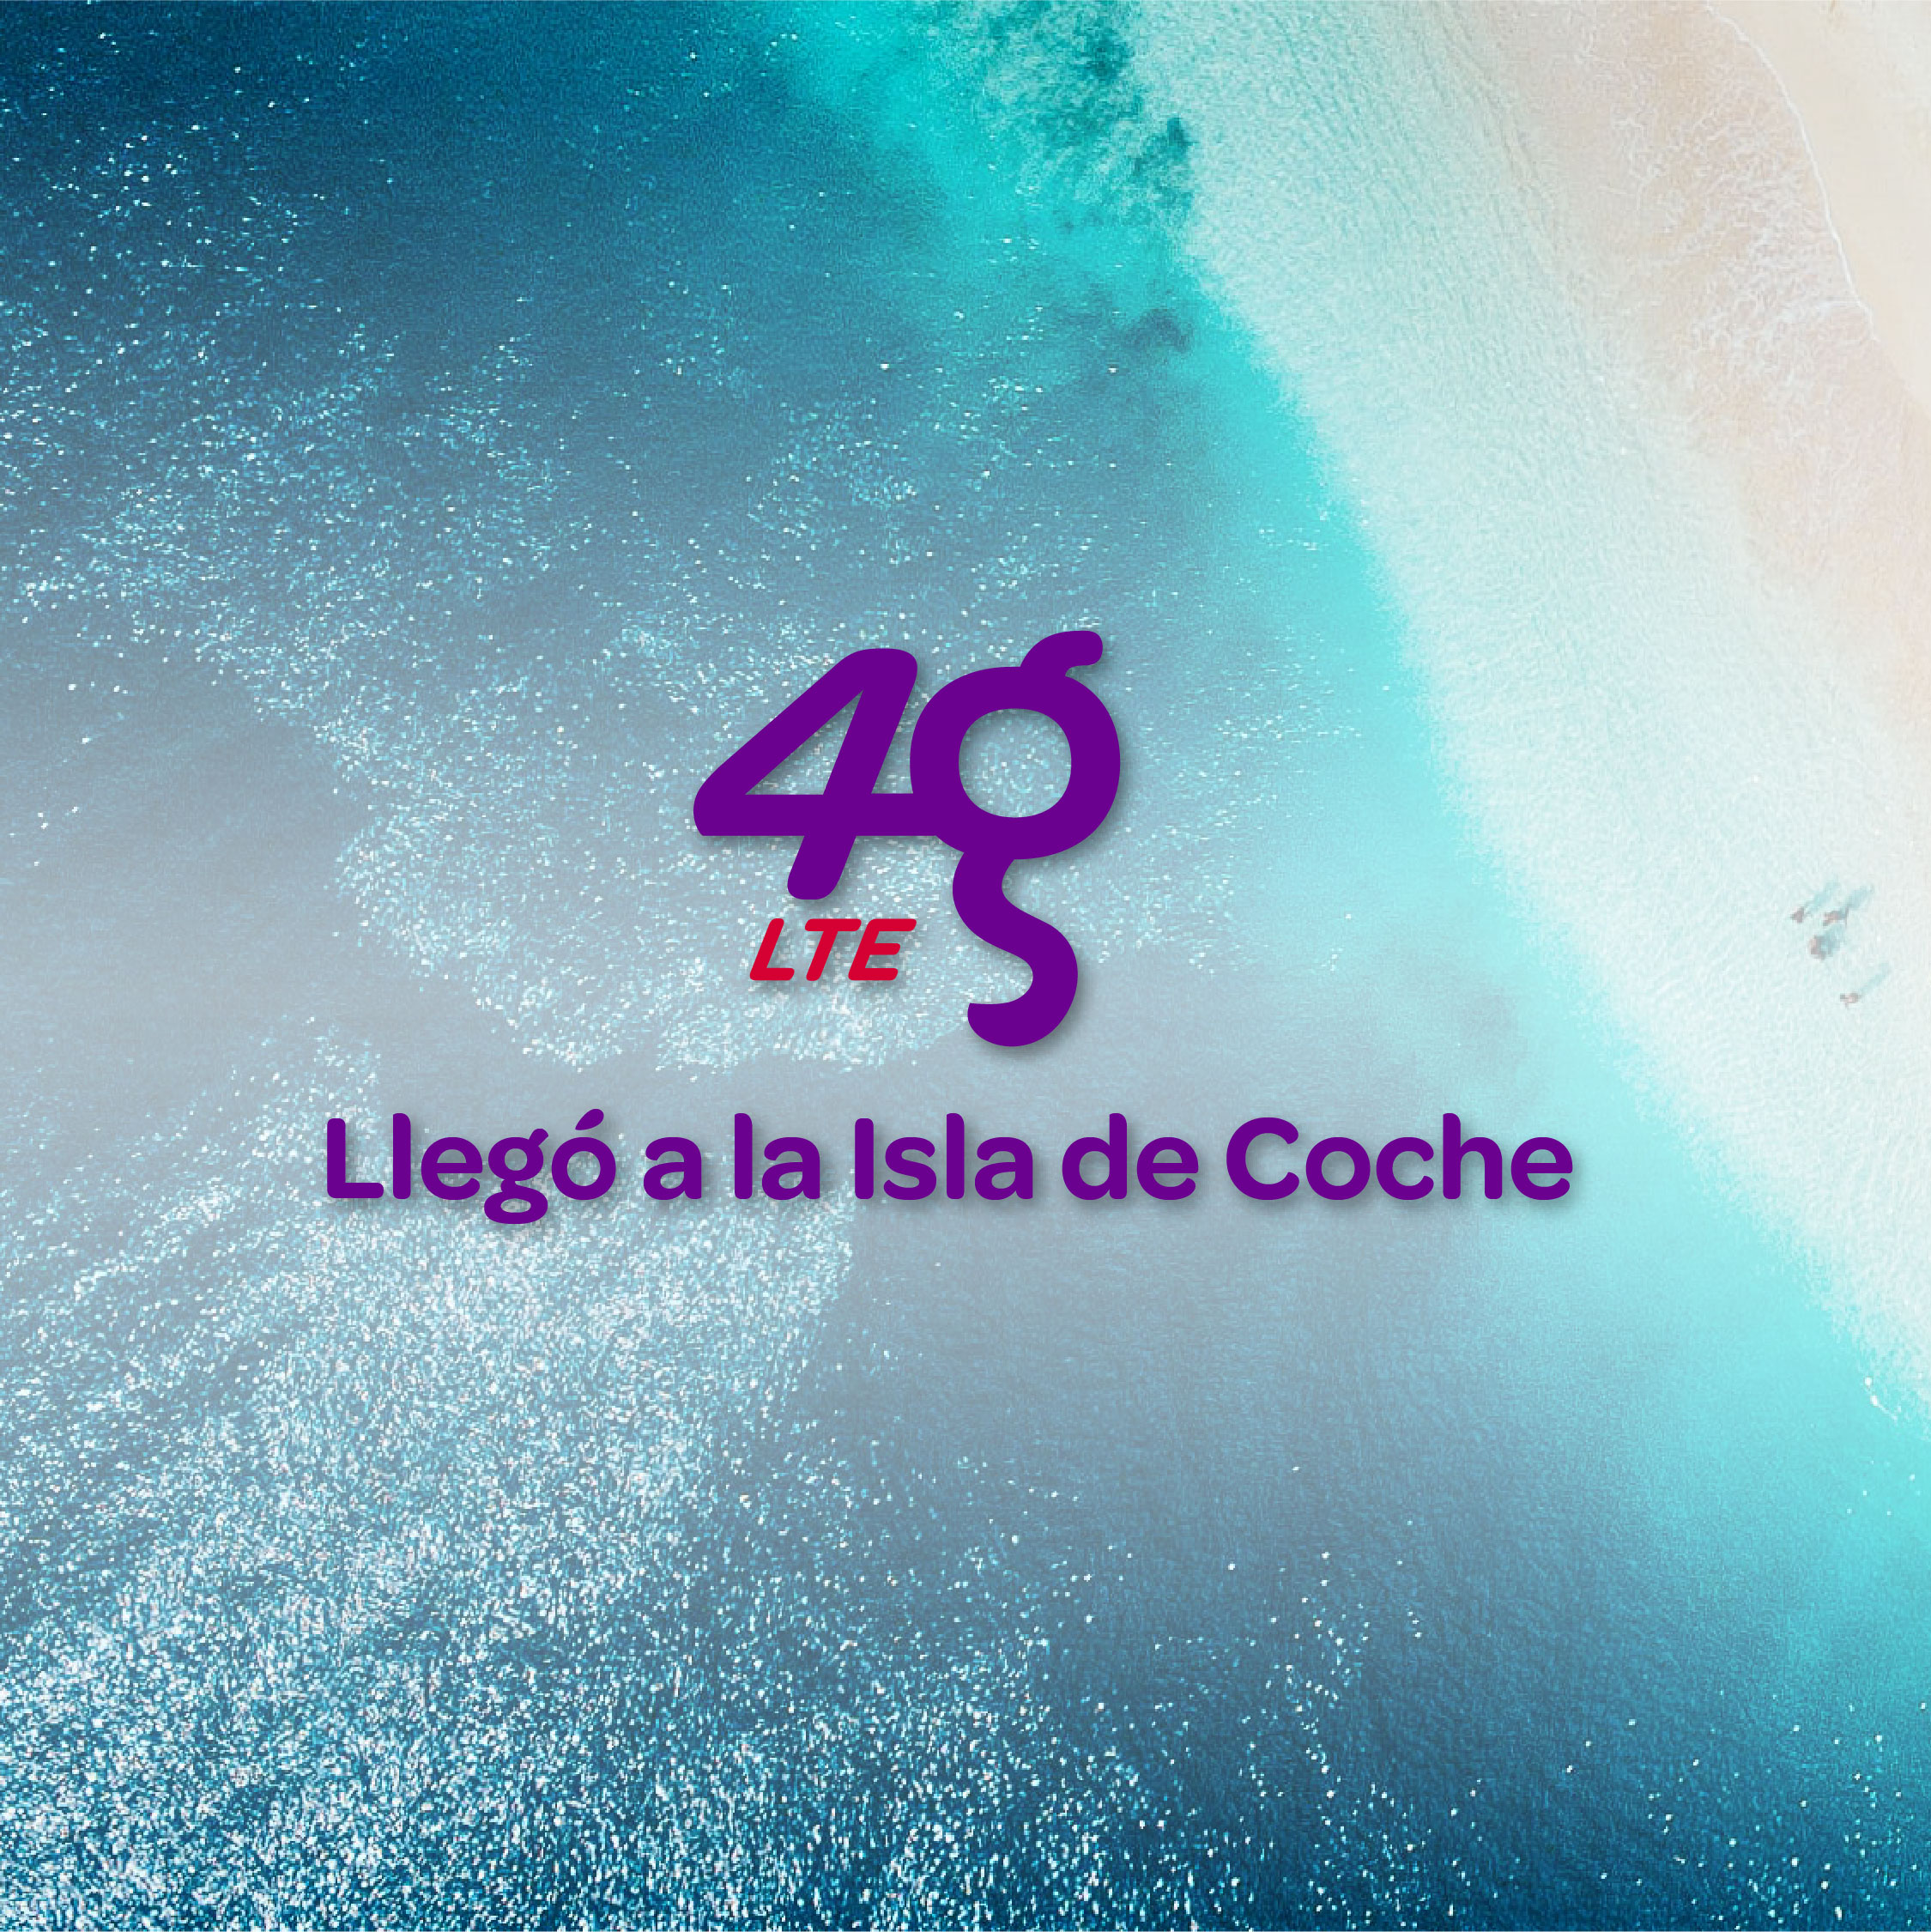 4G LTE de Digitel en la isla de Coche_1